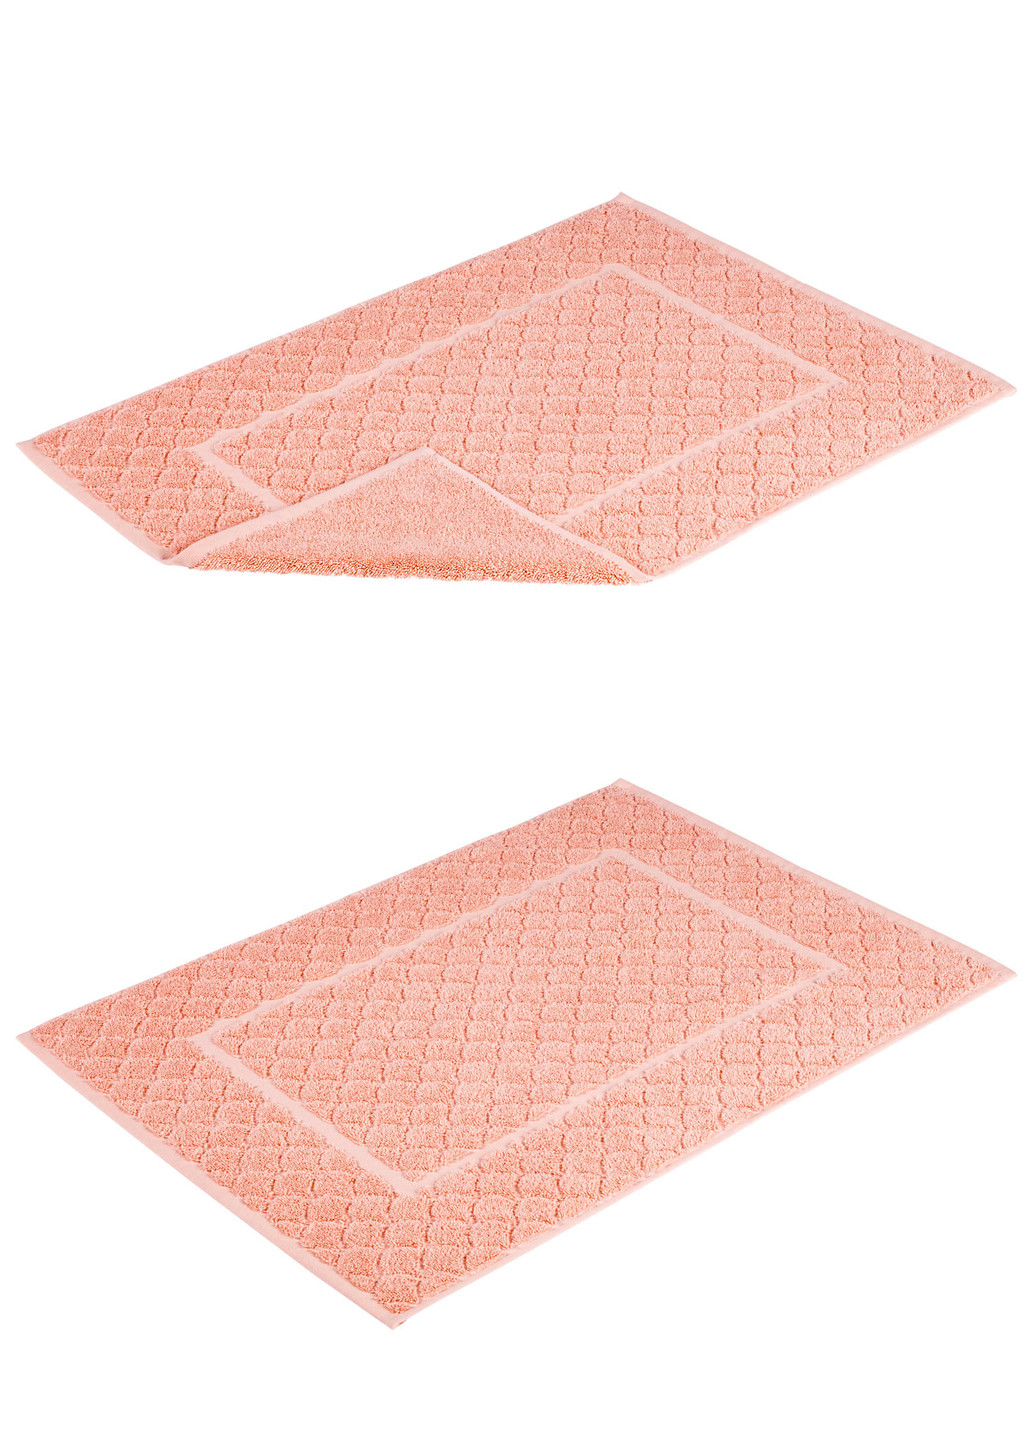 Livarno home рушники для ніг (4 шт) рожевий виробництво - Німеччина